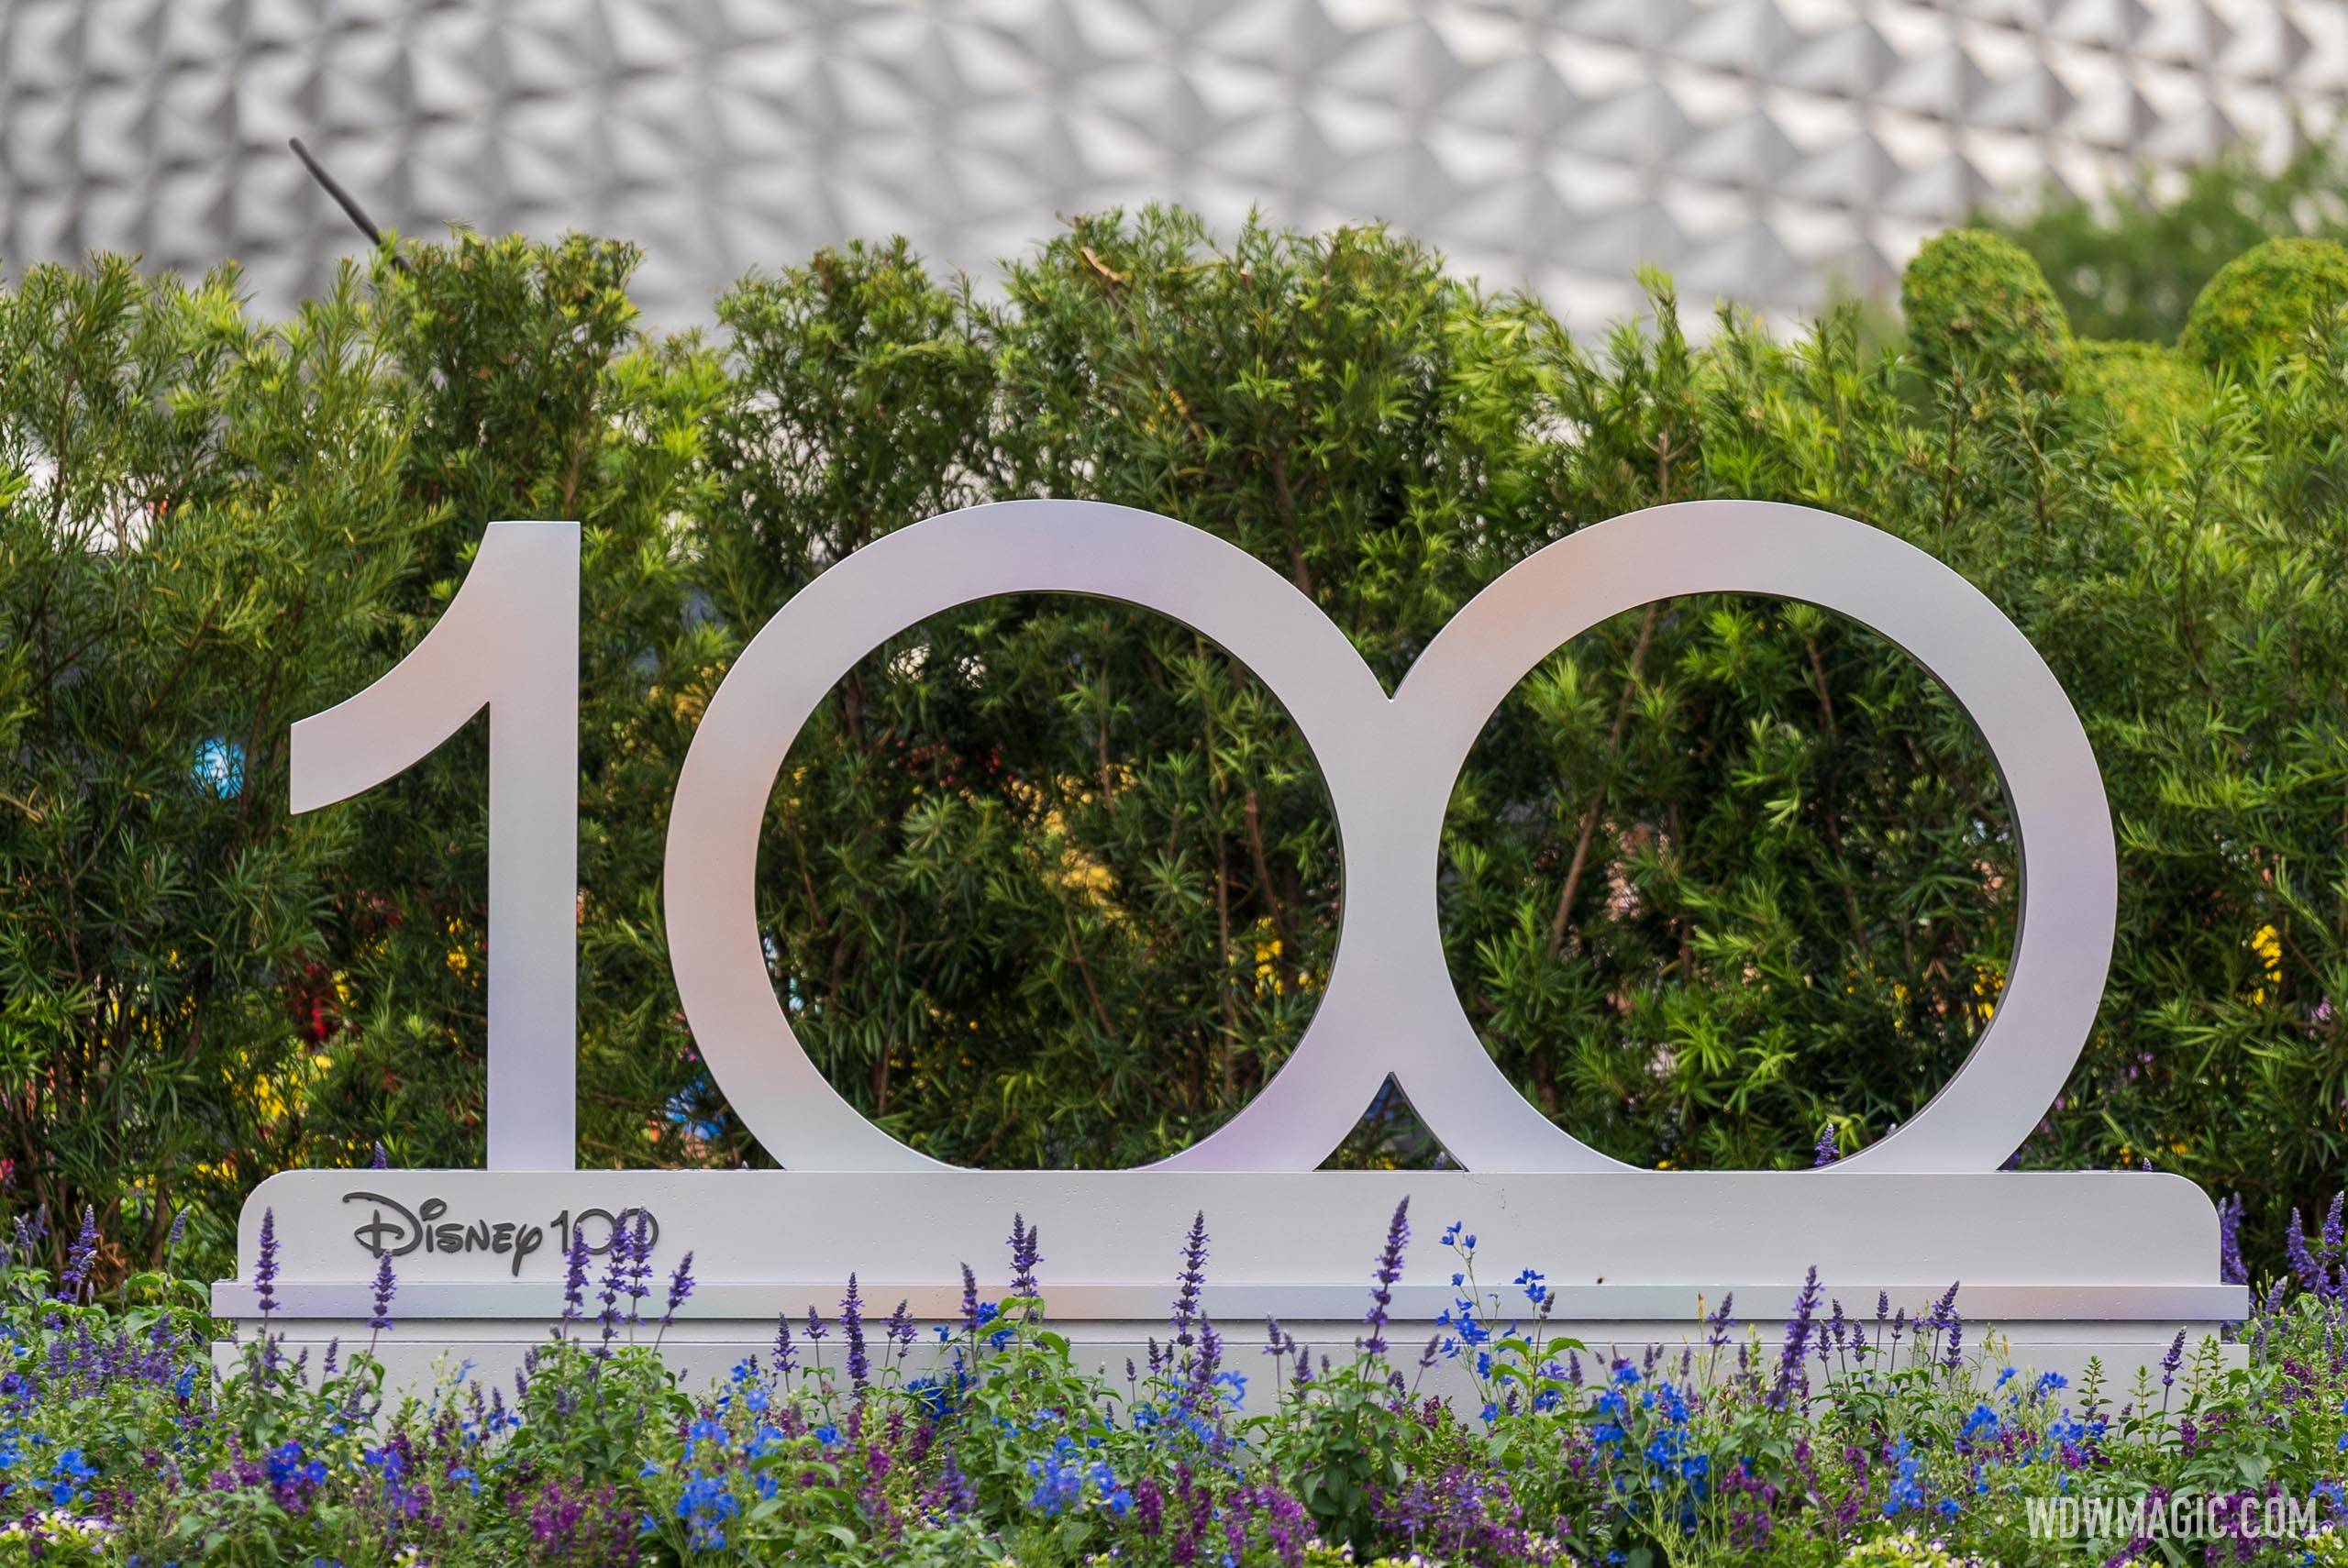 Disney100 display at EPCOT